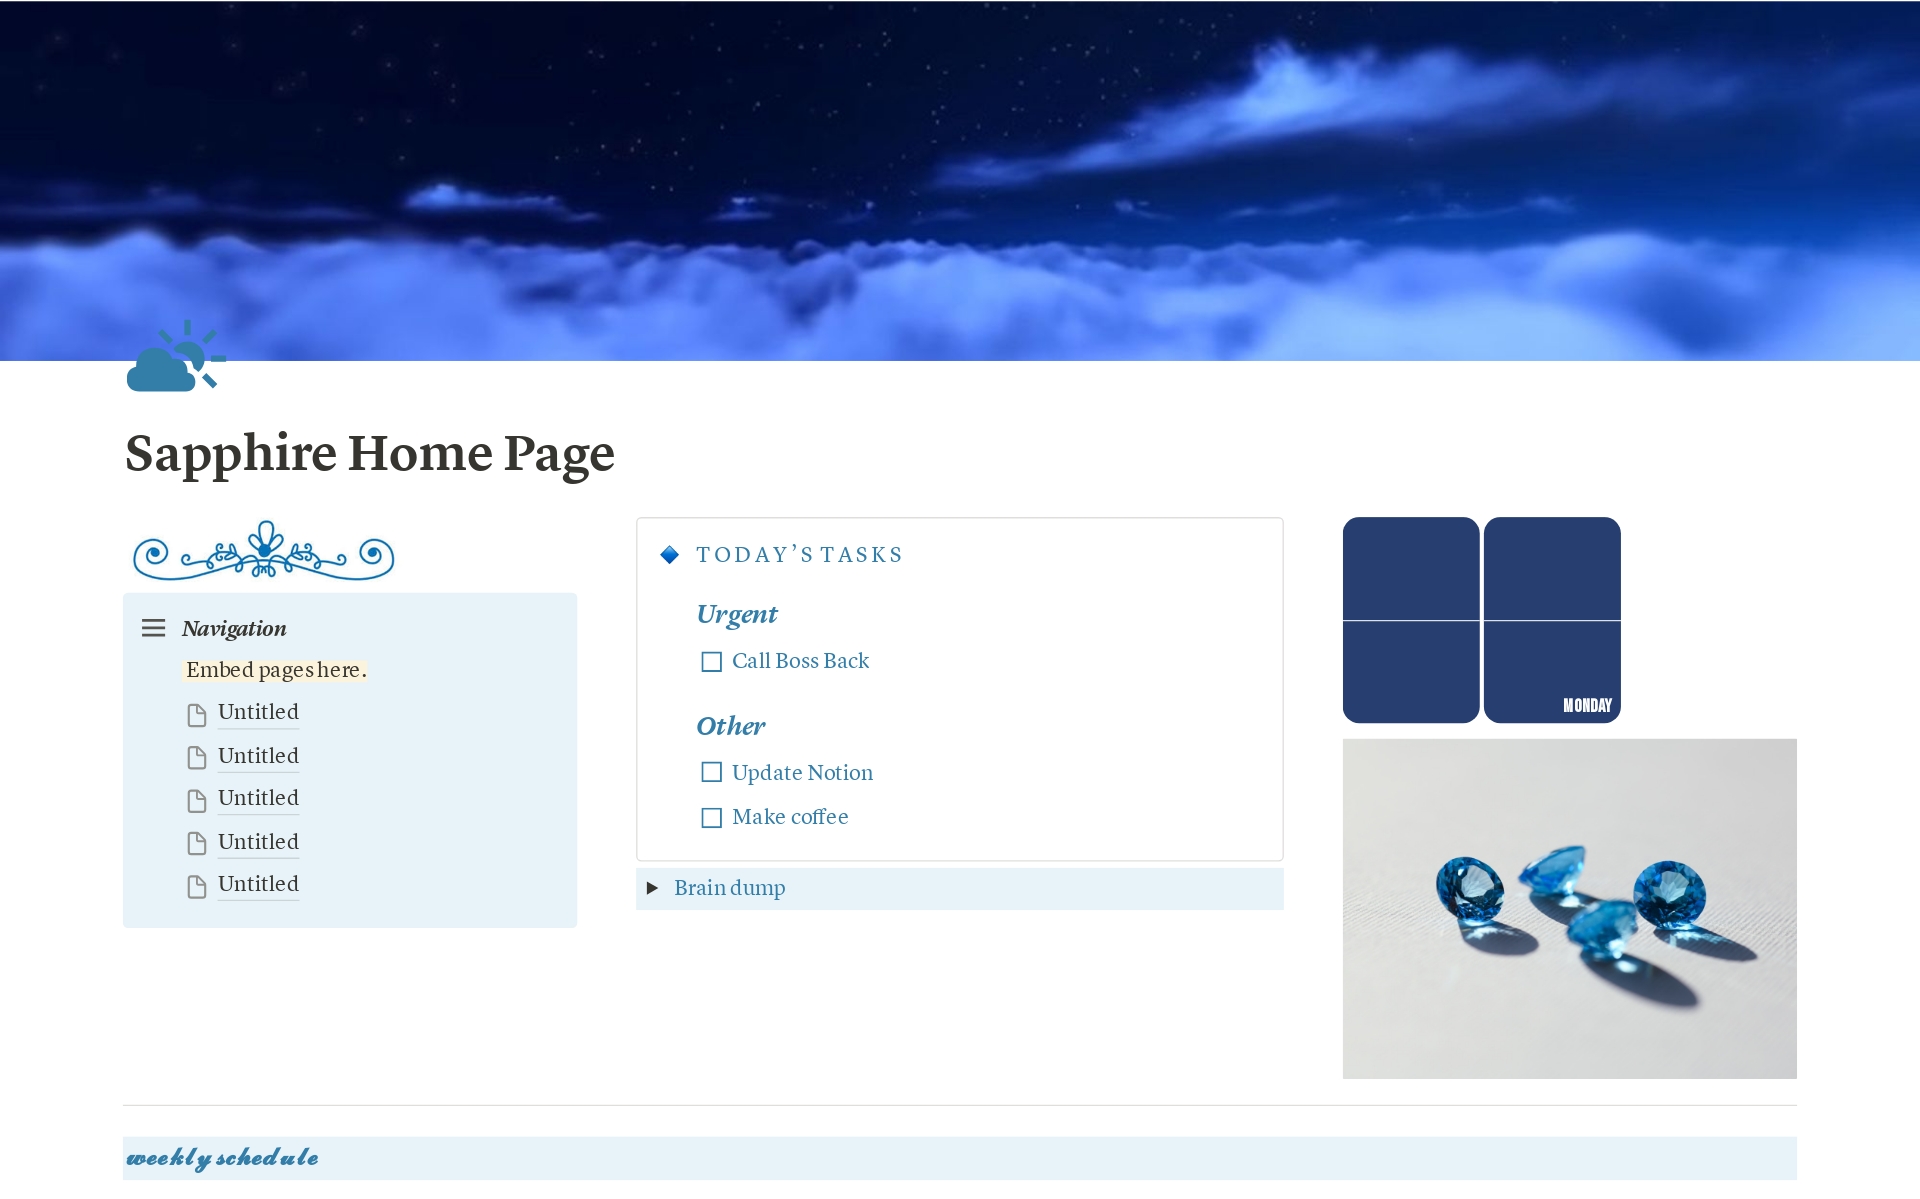 Uma prévia do modelo para Sapphire Home Page